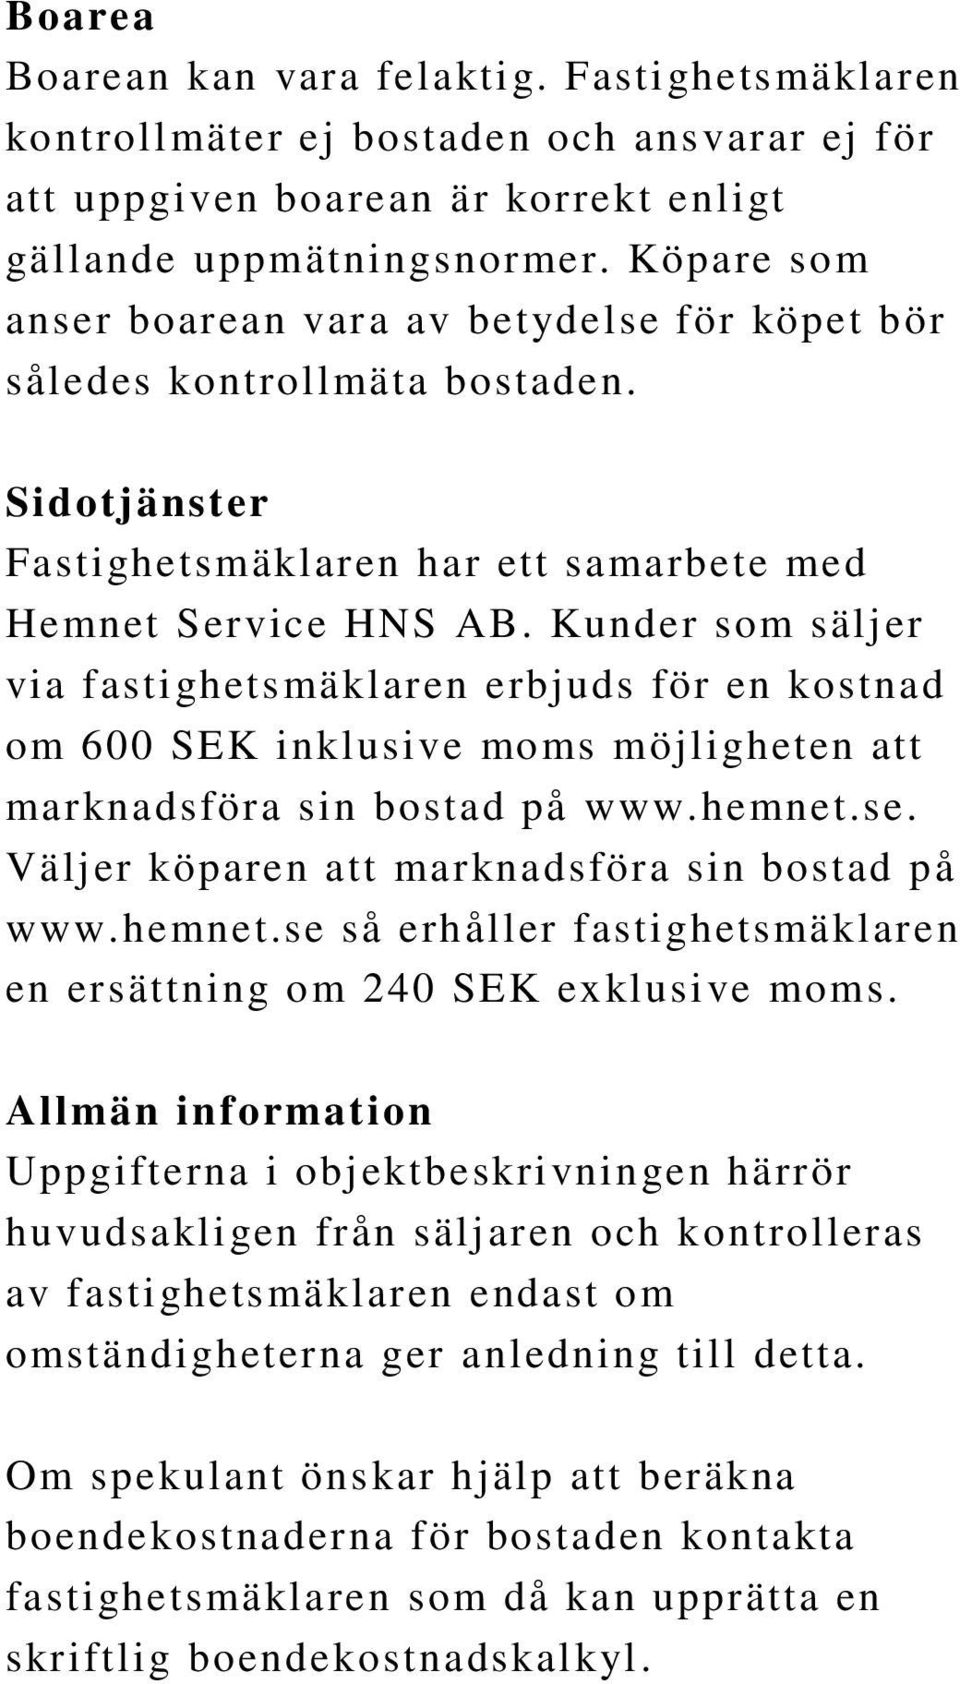 Kunder som säljer via fastighetsmäklaren erbjuds för en kostnad om 600 SEK inklusive moms möjligheten att marknadsföra sin bostad på www.hemnet.se. Väljer köparen att marknadsföra sin bostad på www.